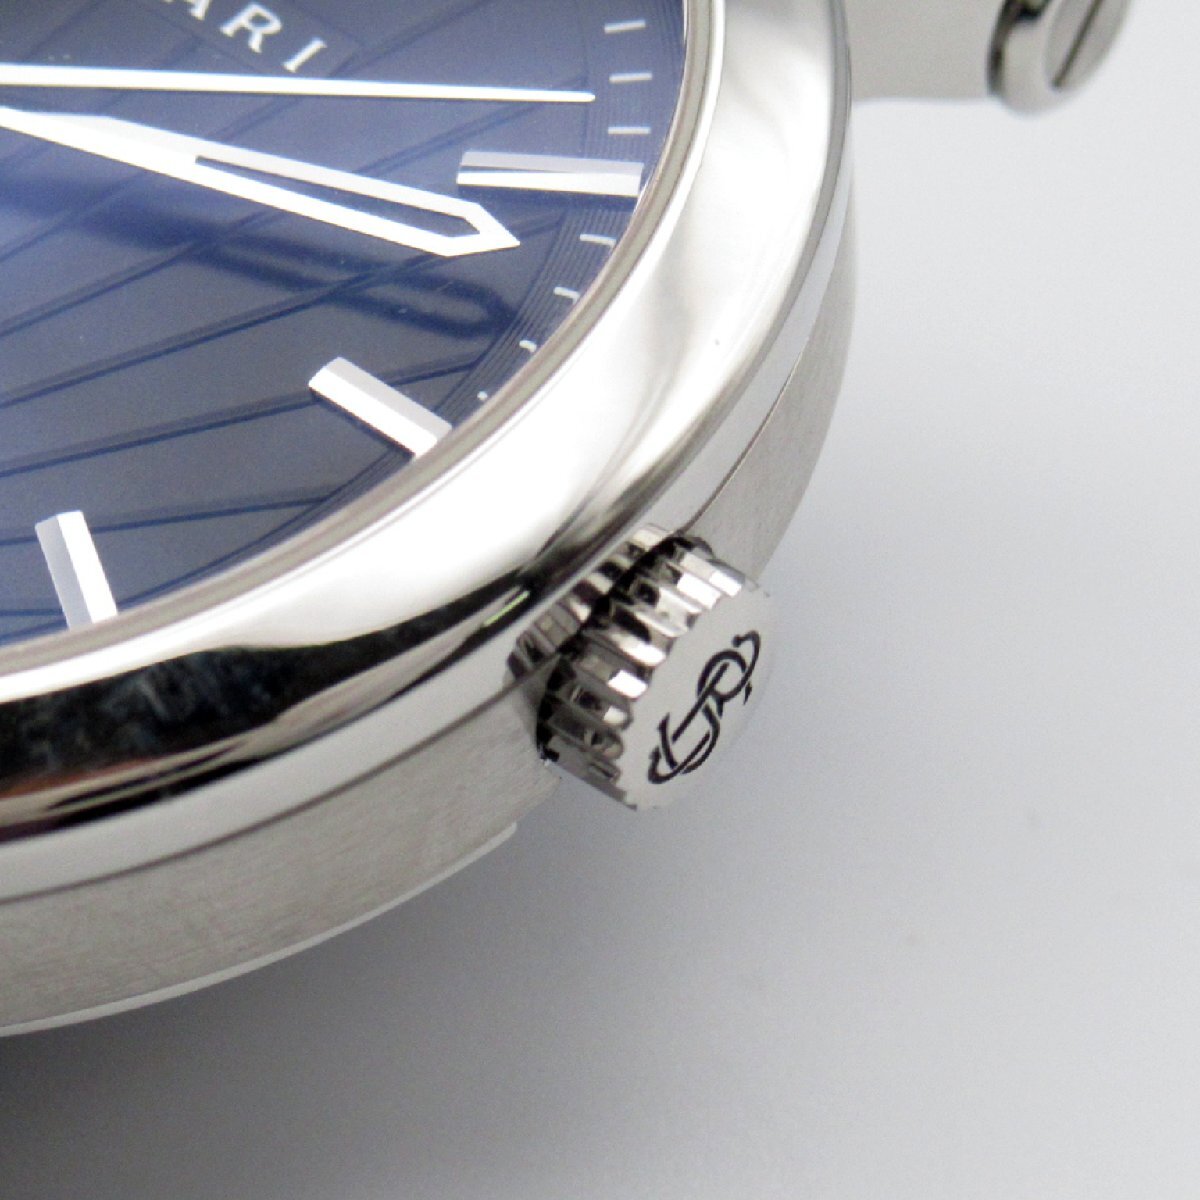  BVLGARY soti rio BVLGARY Retrograde бренд off BVLGARI нержавеющая сталь наручные часы SS/ черный ko кожа б/у мужской 